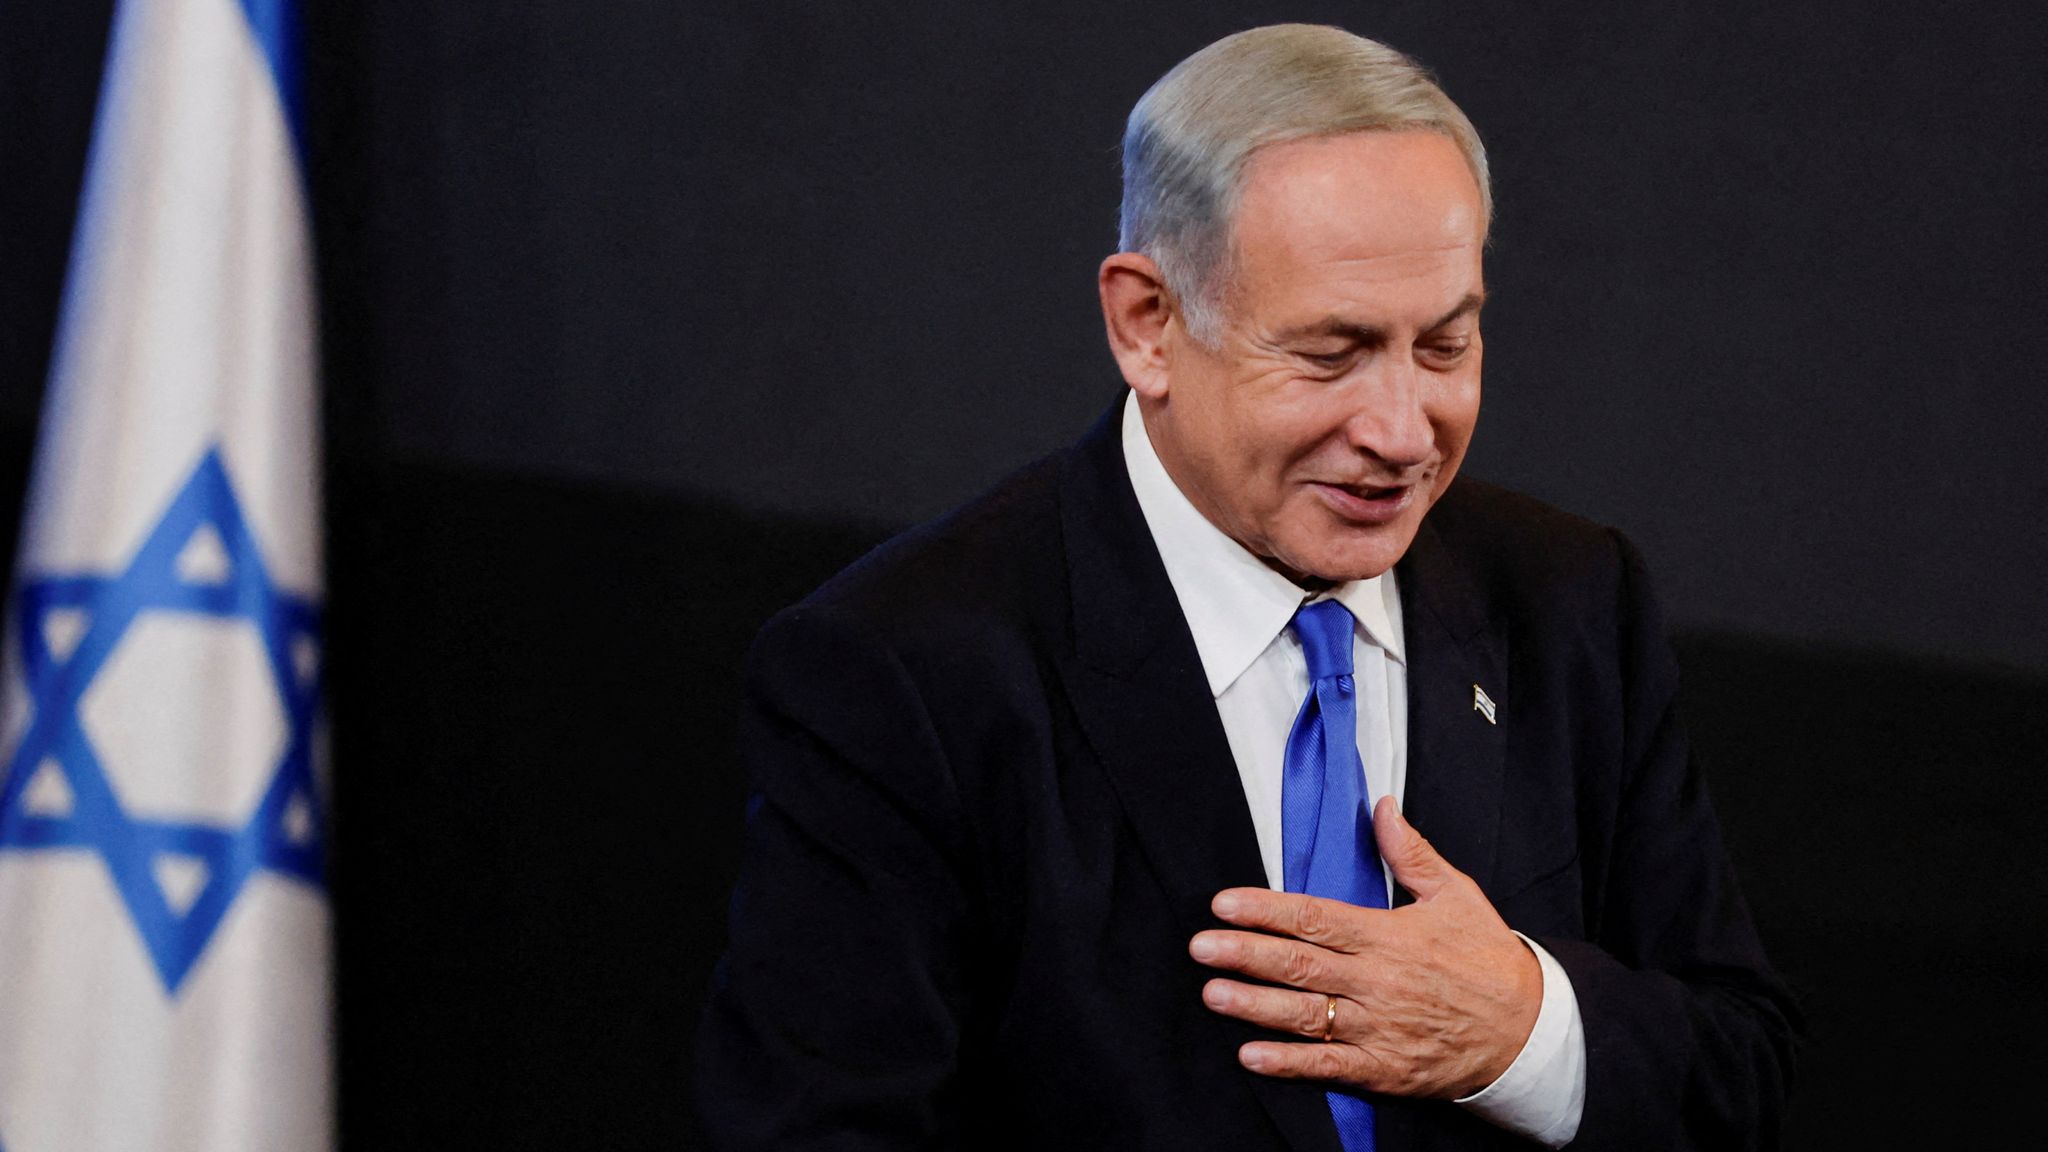 Élections législatives israéliennes : Netanyahu réussit à obtenir une majorité avec ses alliés de droite